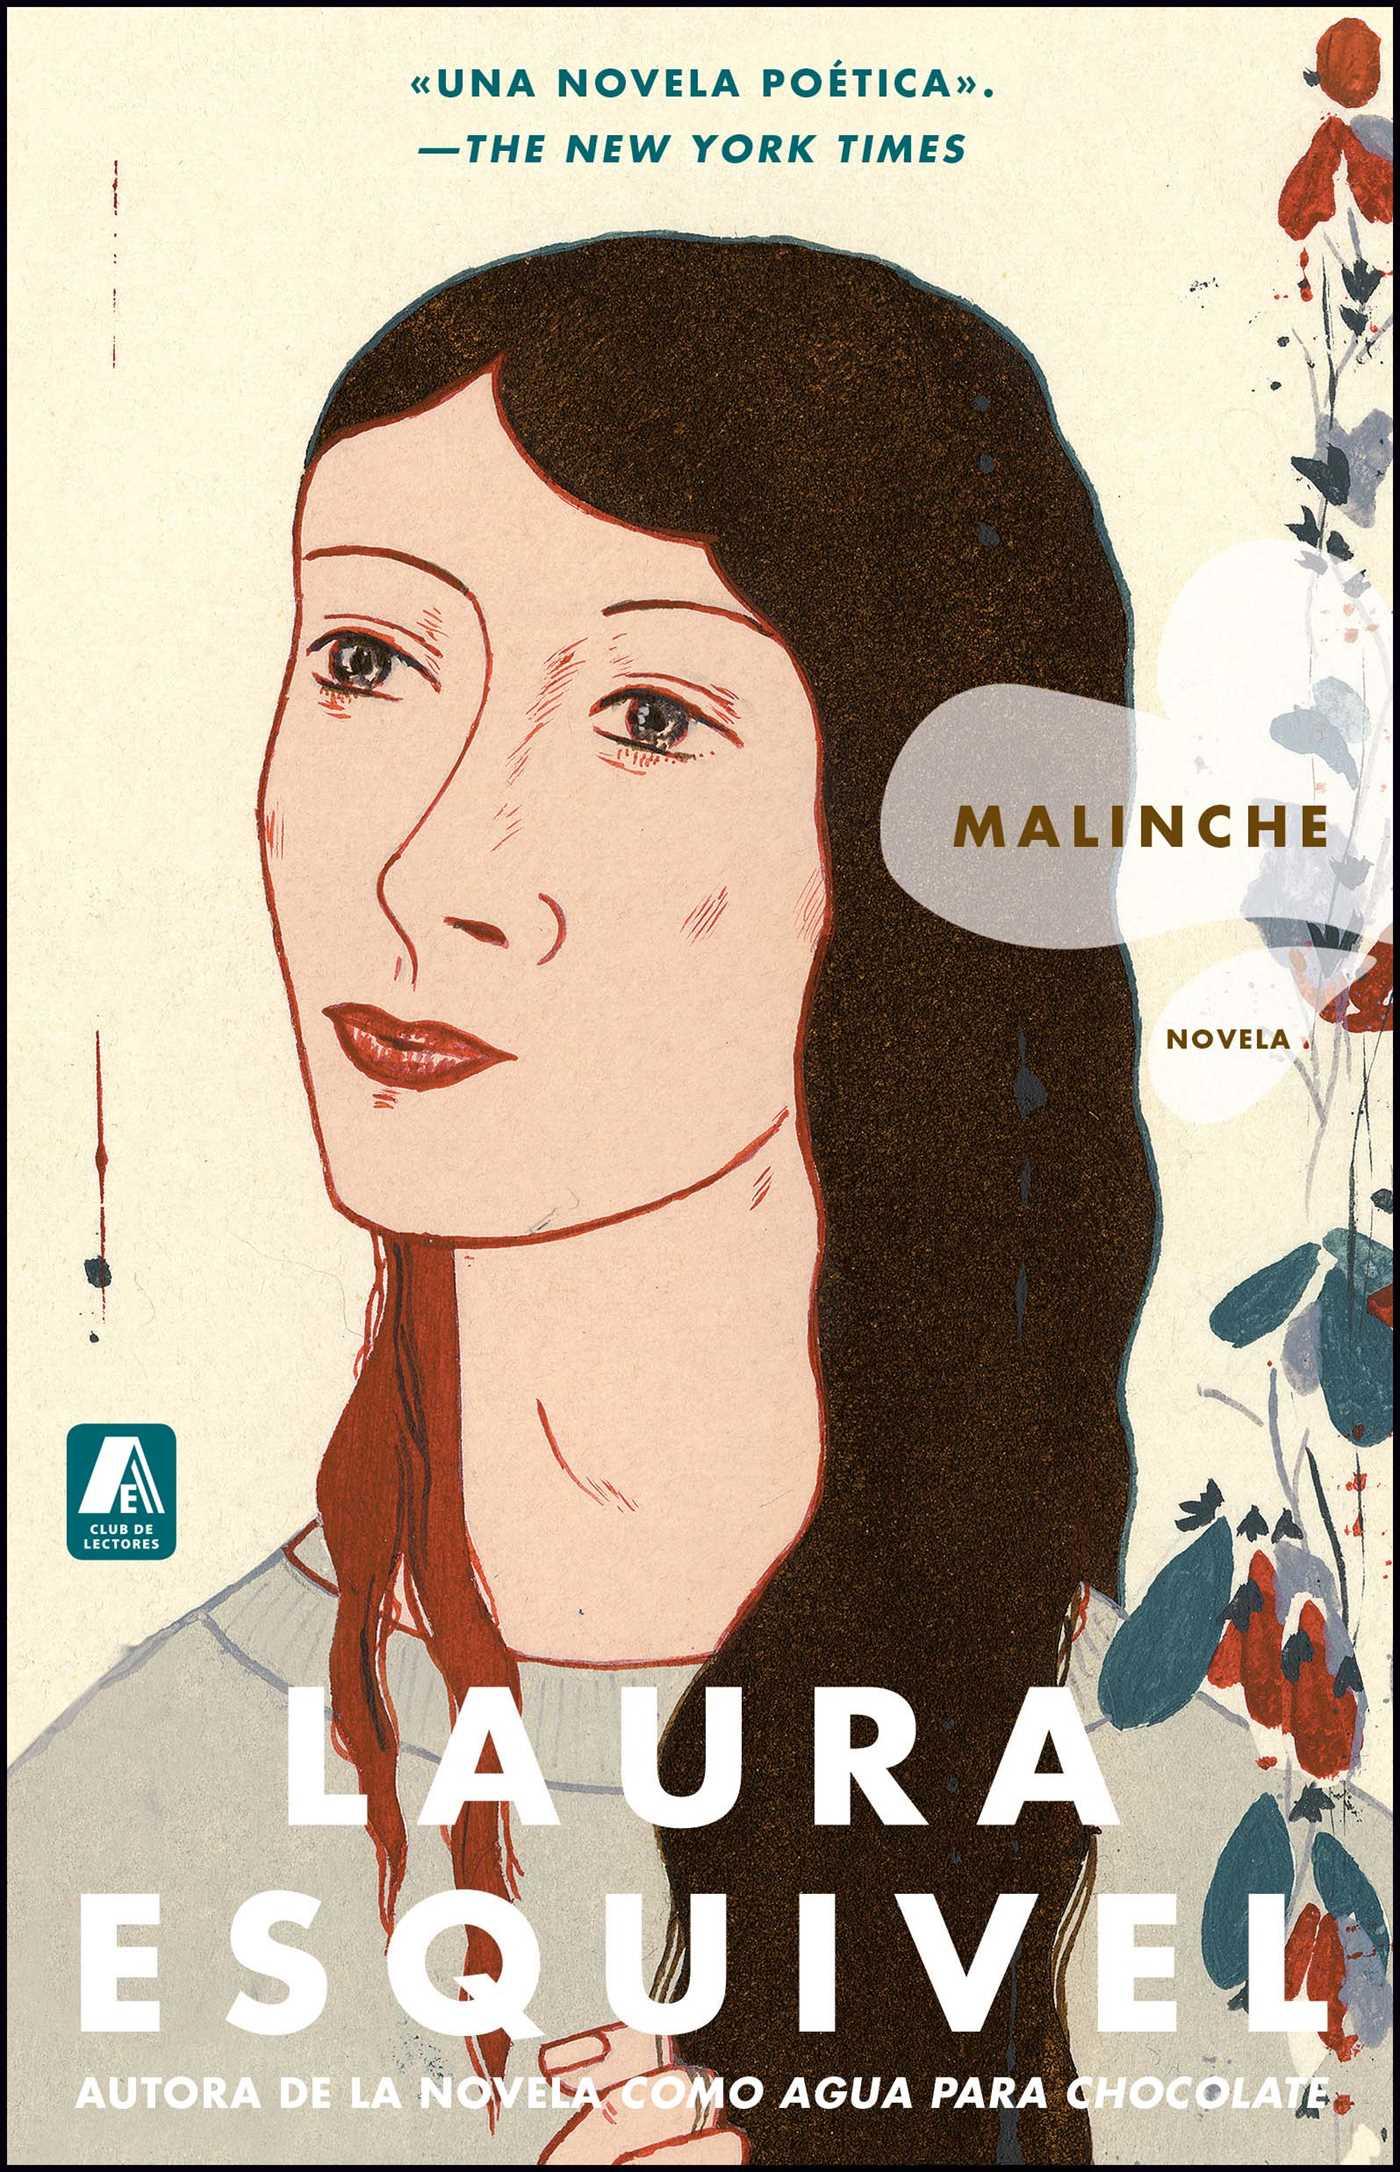 Malinche - Esquivel, Laura